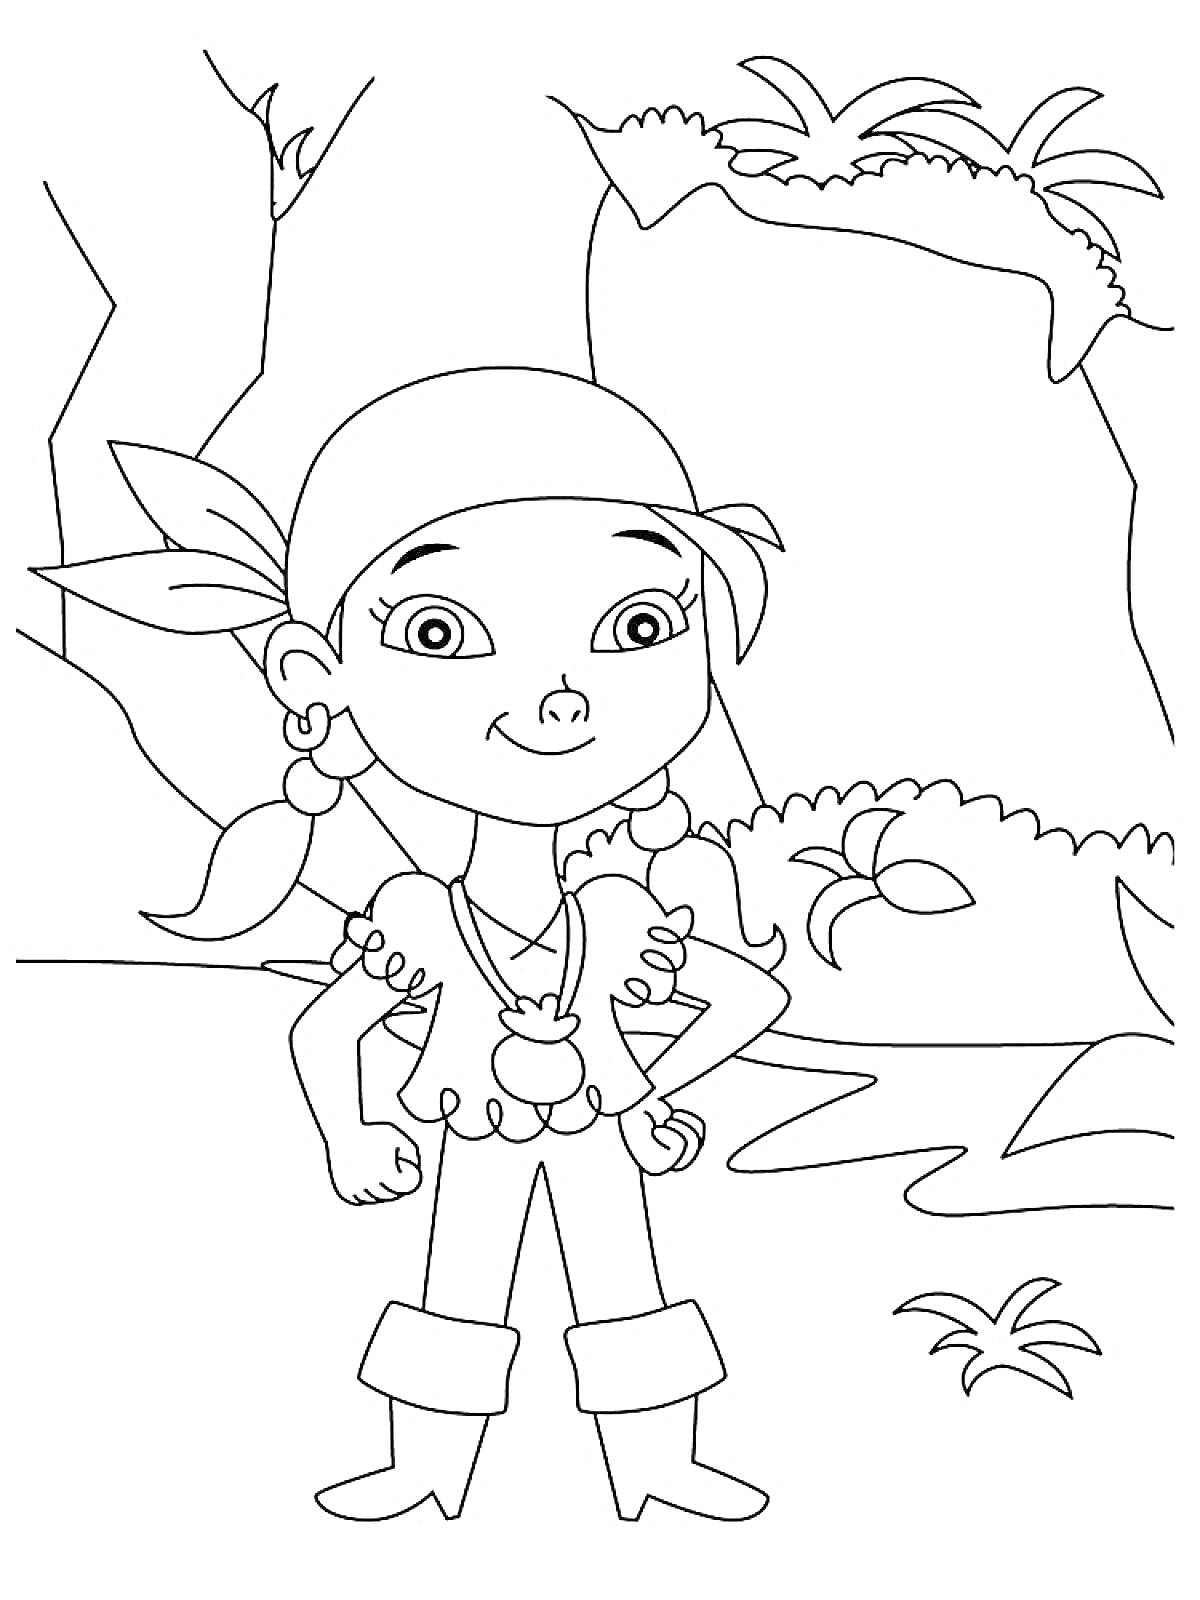 Раскраска Девочка в пиратском костюме на фоне джунглей с растительностью и скалами